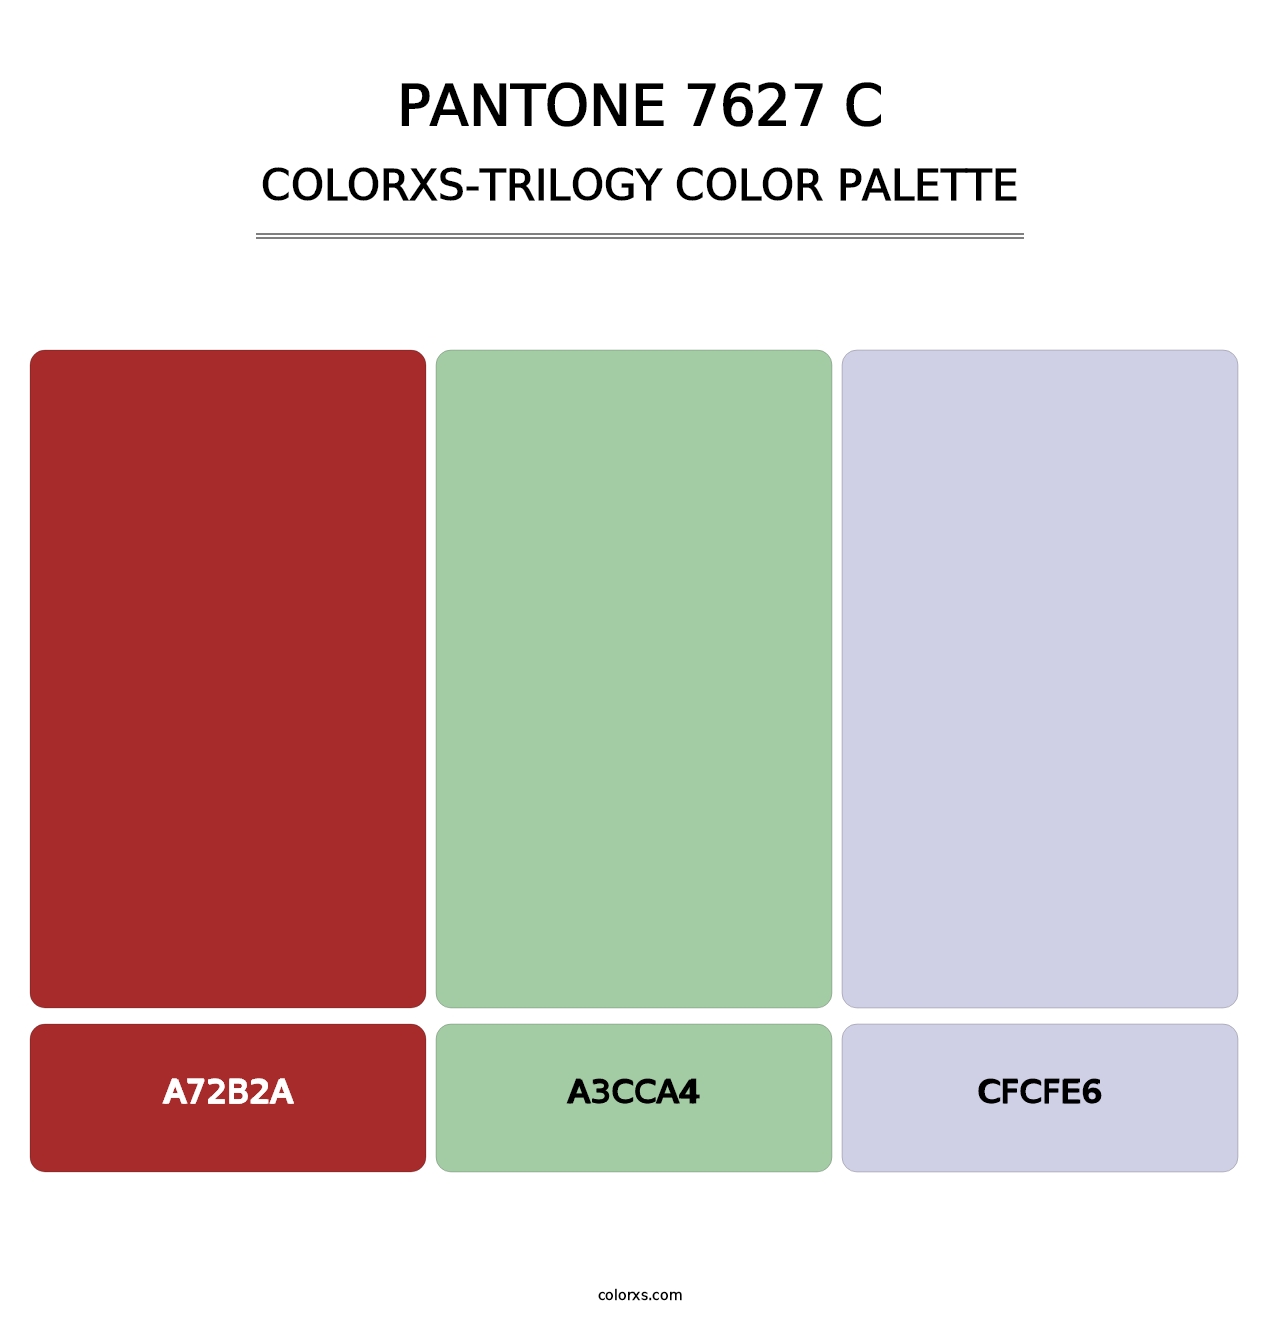 PANTONE 7627 C - Colorxs Trilogy Palette